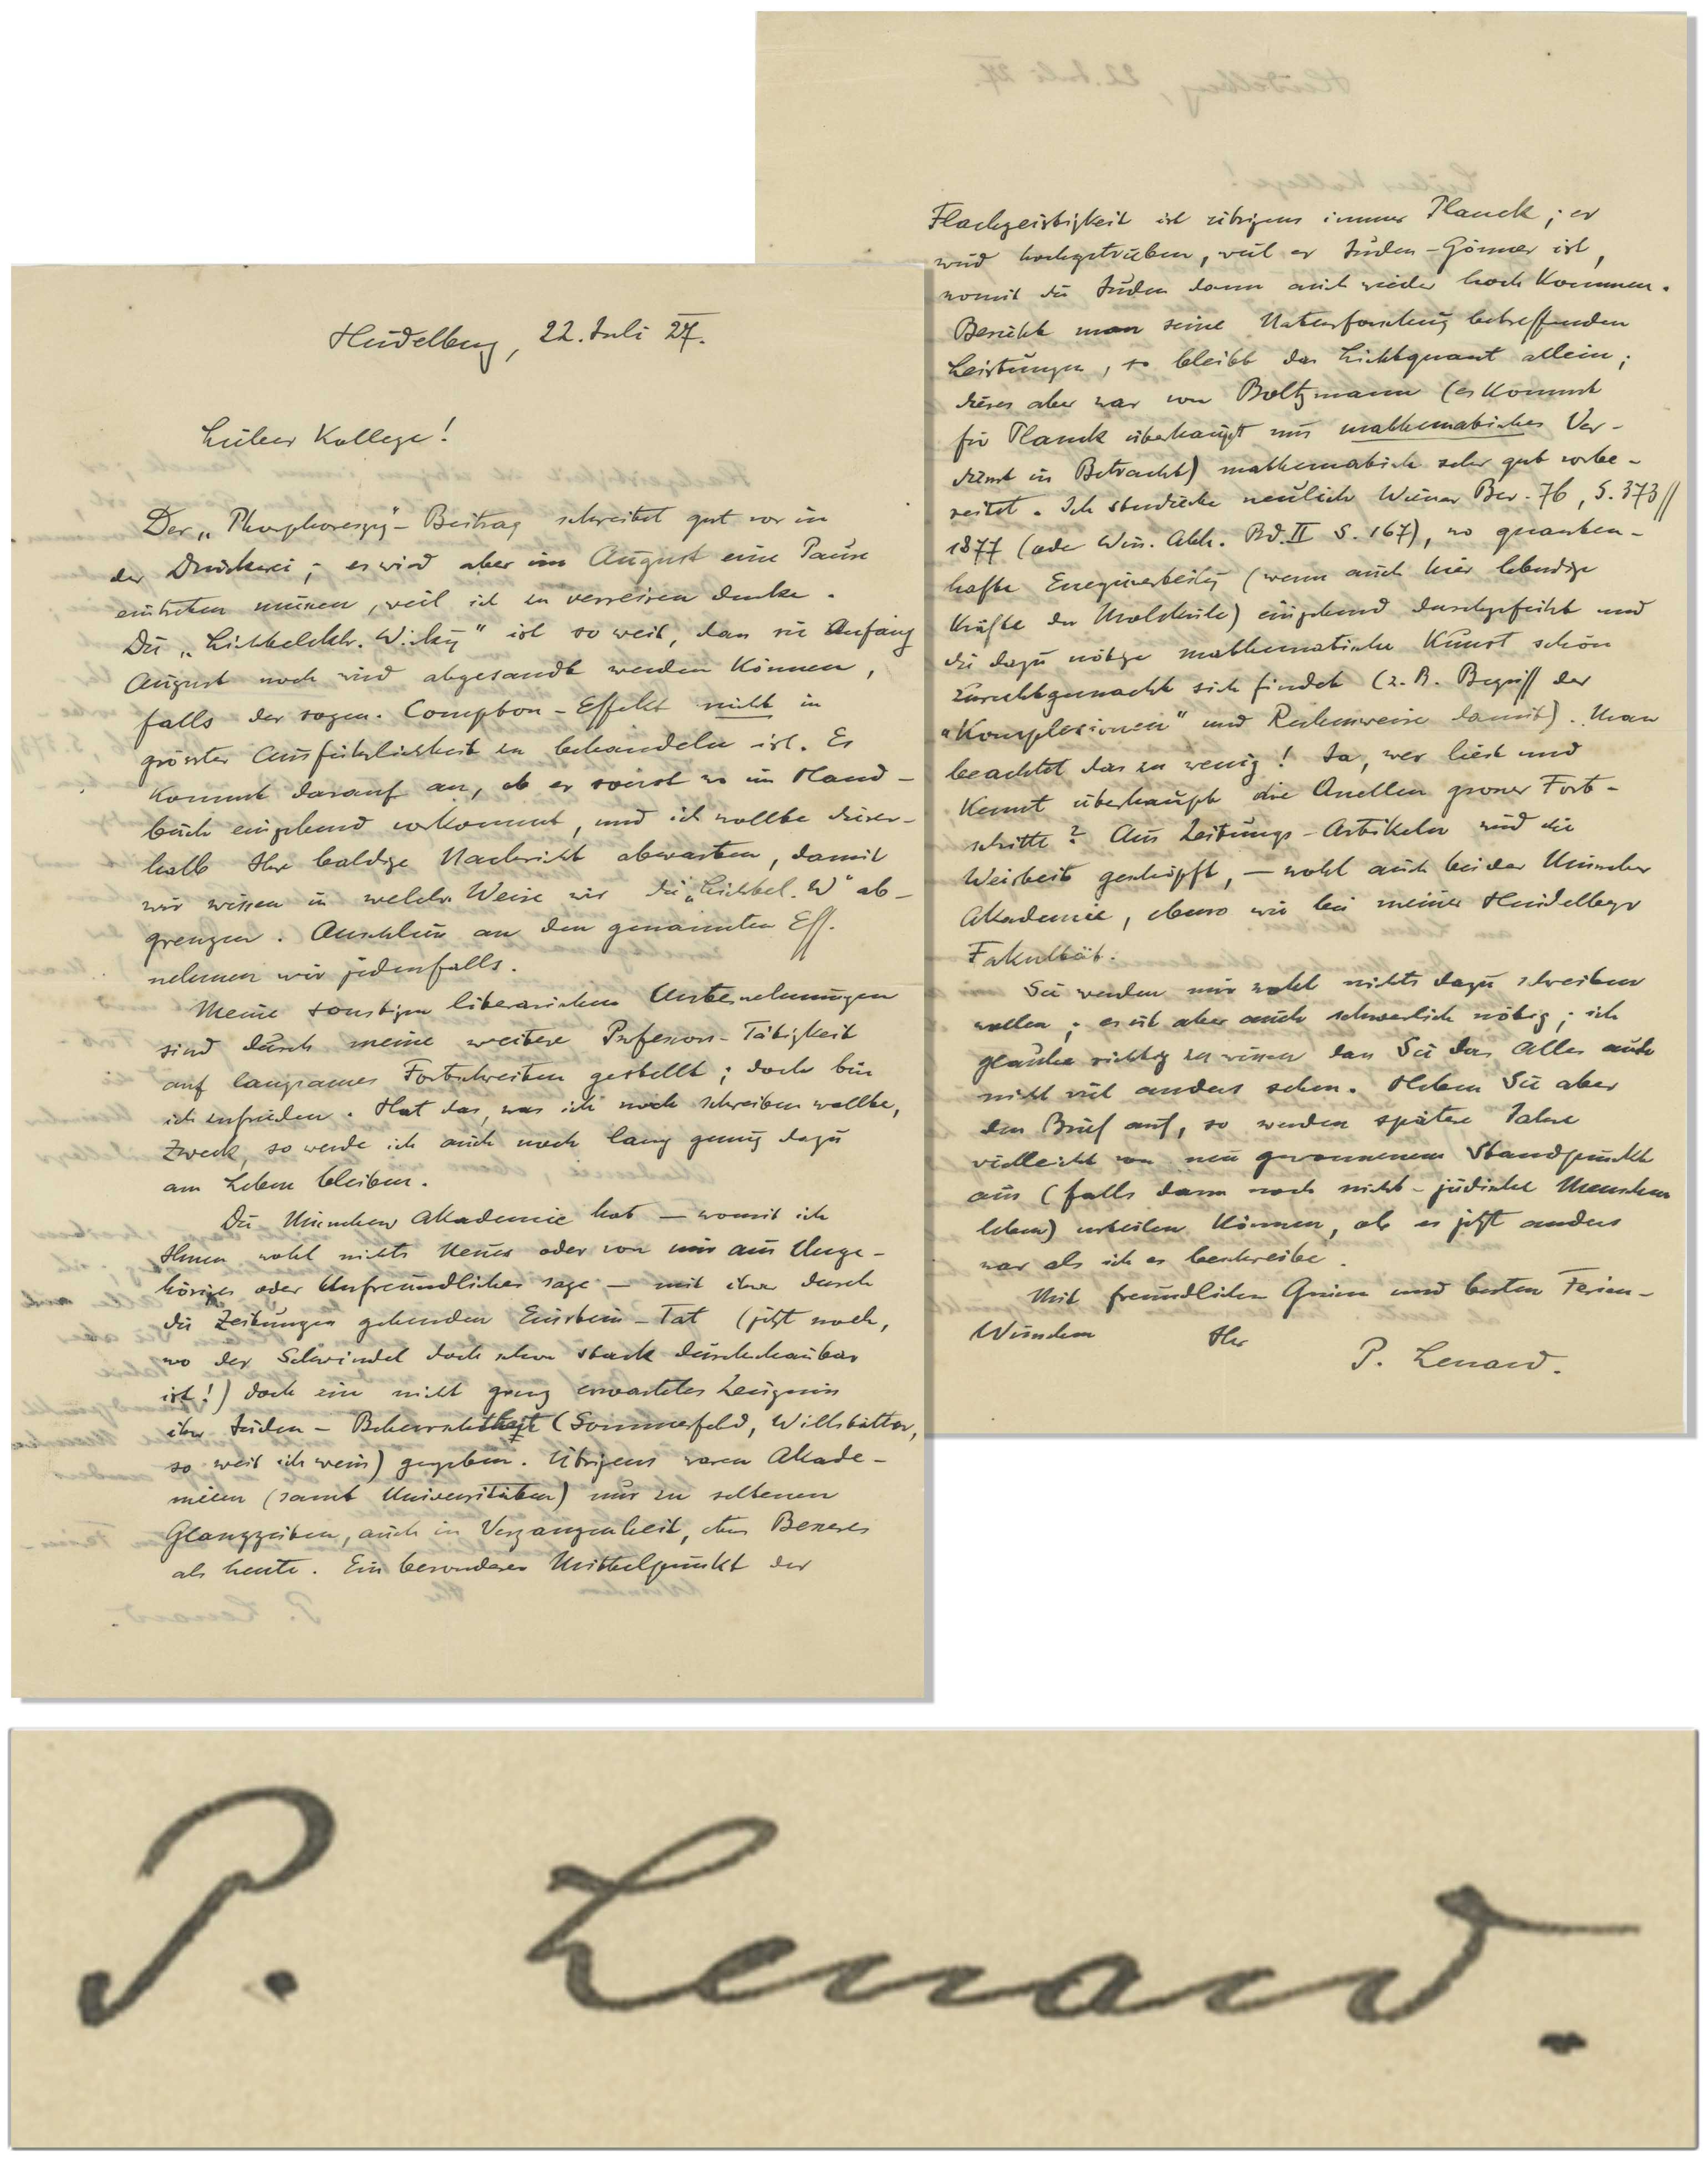 Carta de Prêmio Nobel com comentários racistas sobre Einstein vai a leilão (Foto: /Nate D. Sanders Auctions/Reprodução)